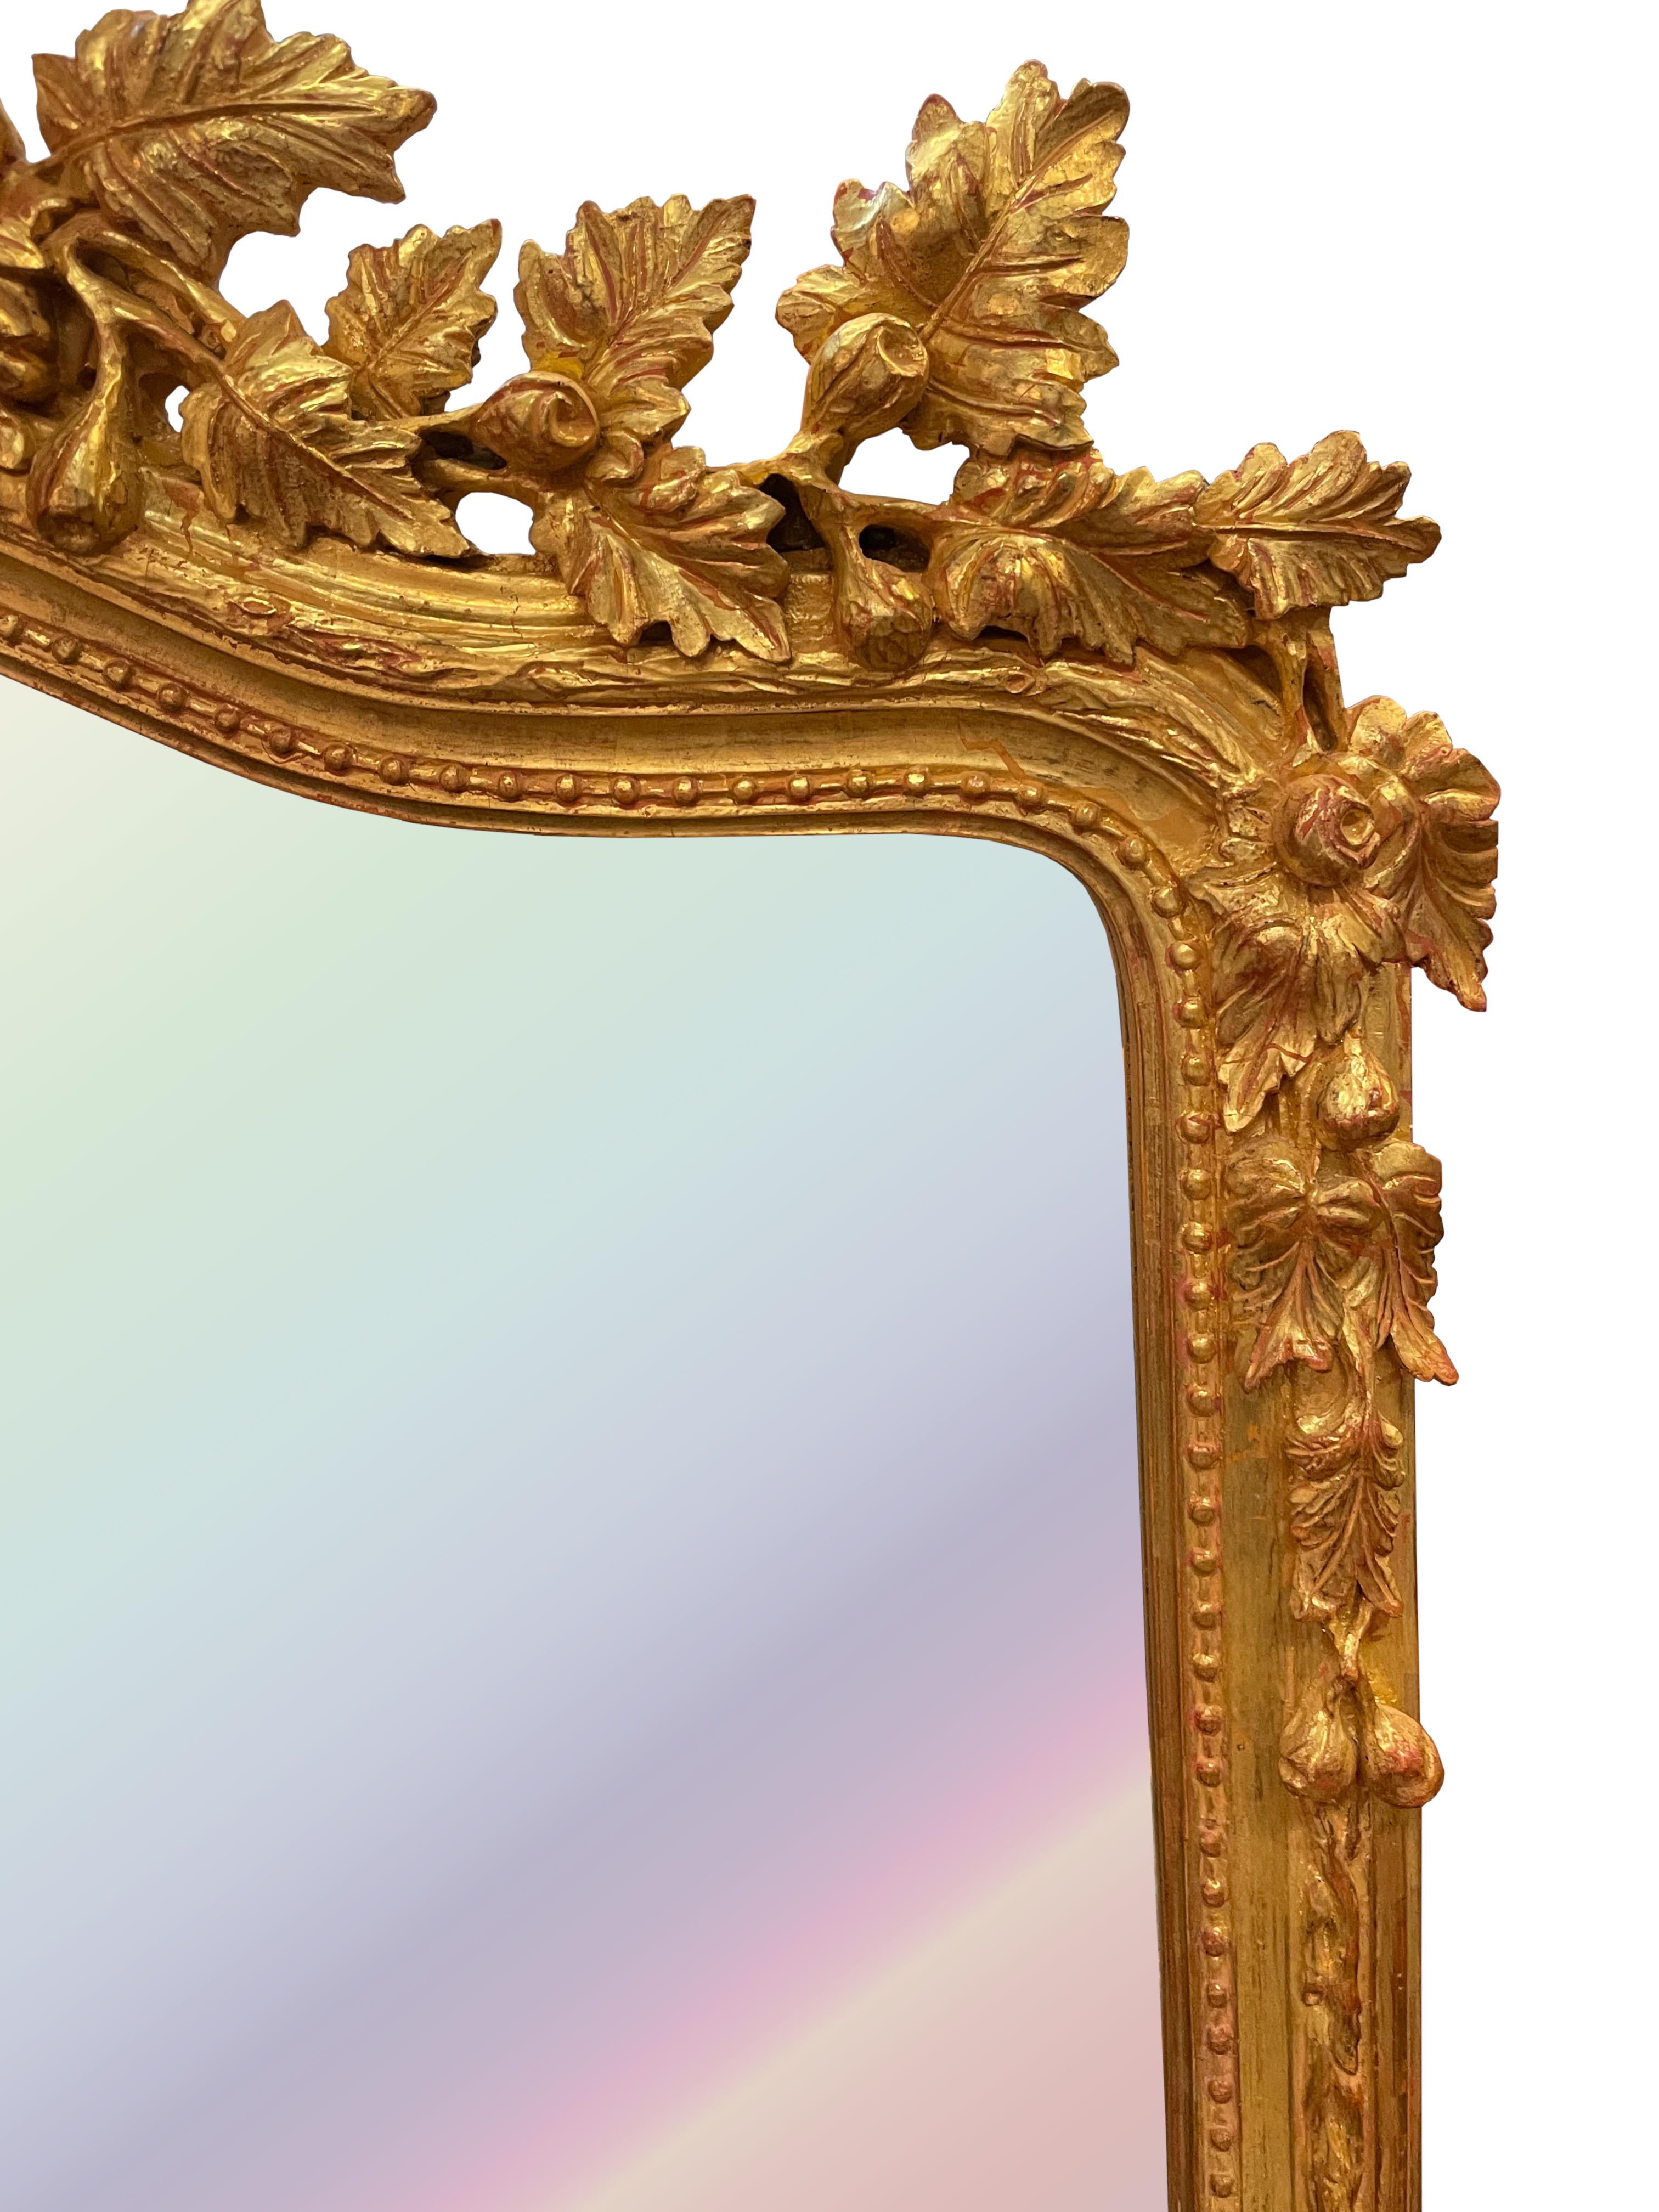 
Louis XV Stil Giltwood Spiegel
Die abgeschrägte, gewölbte Spiegelplatte befindet sich in einer mit Perlen und Ranken geschnitzten Umrandung, die schlangenförmige, gewölbte Krone ist mit fruchtigen Blättern und einem geschwungenen Band geschmückt.